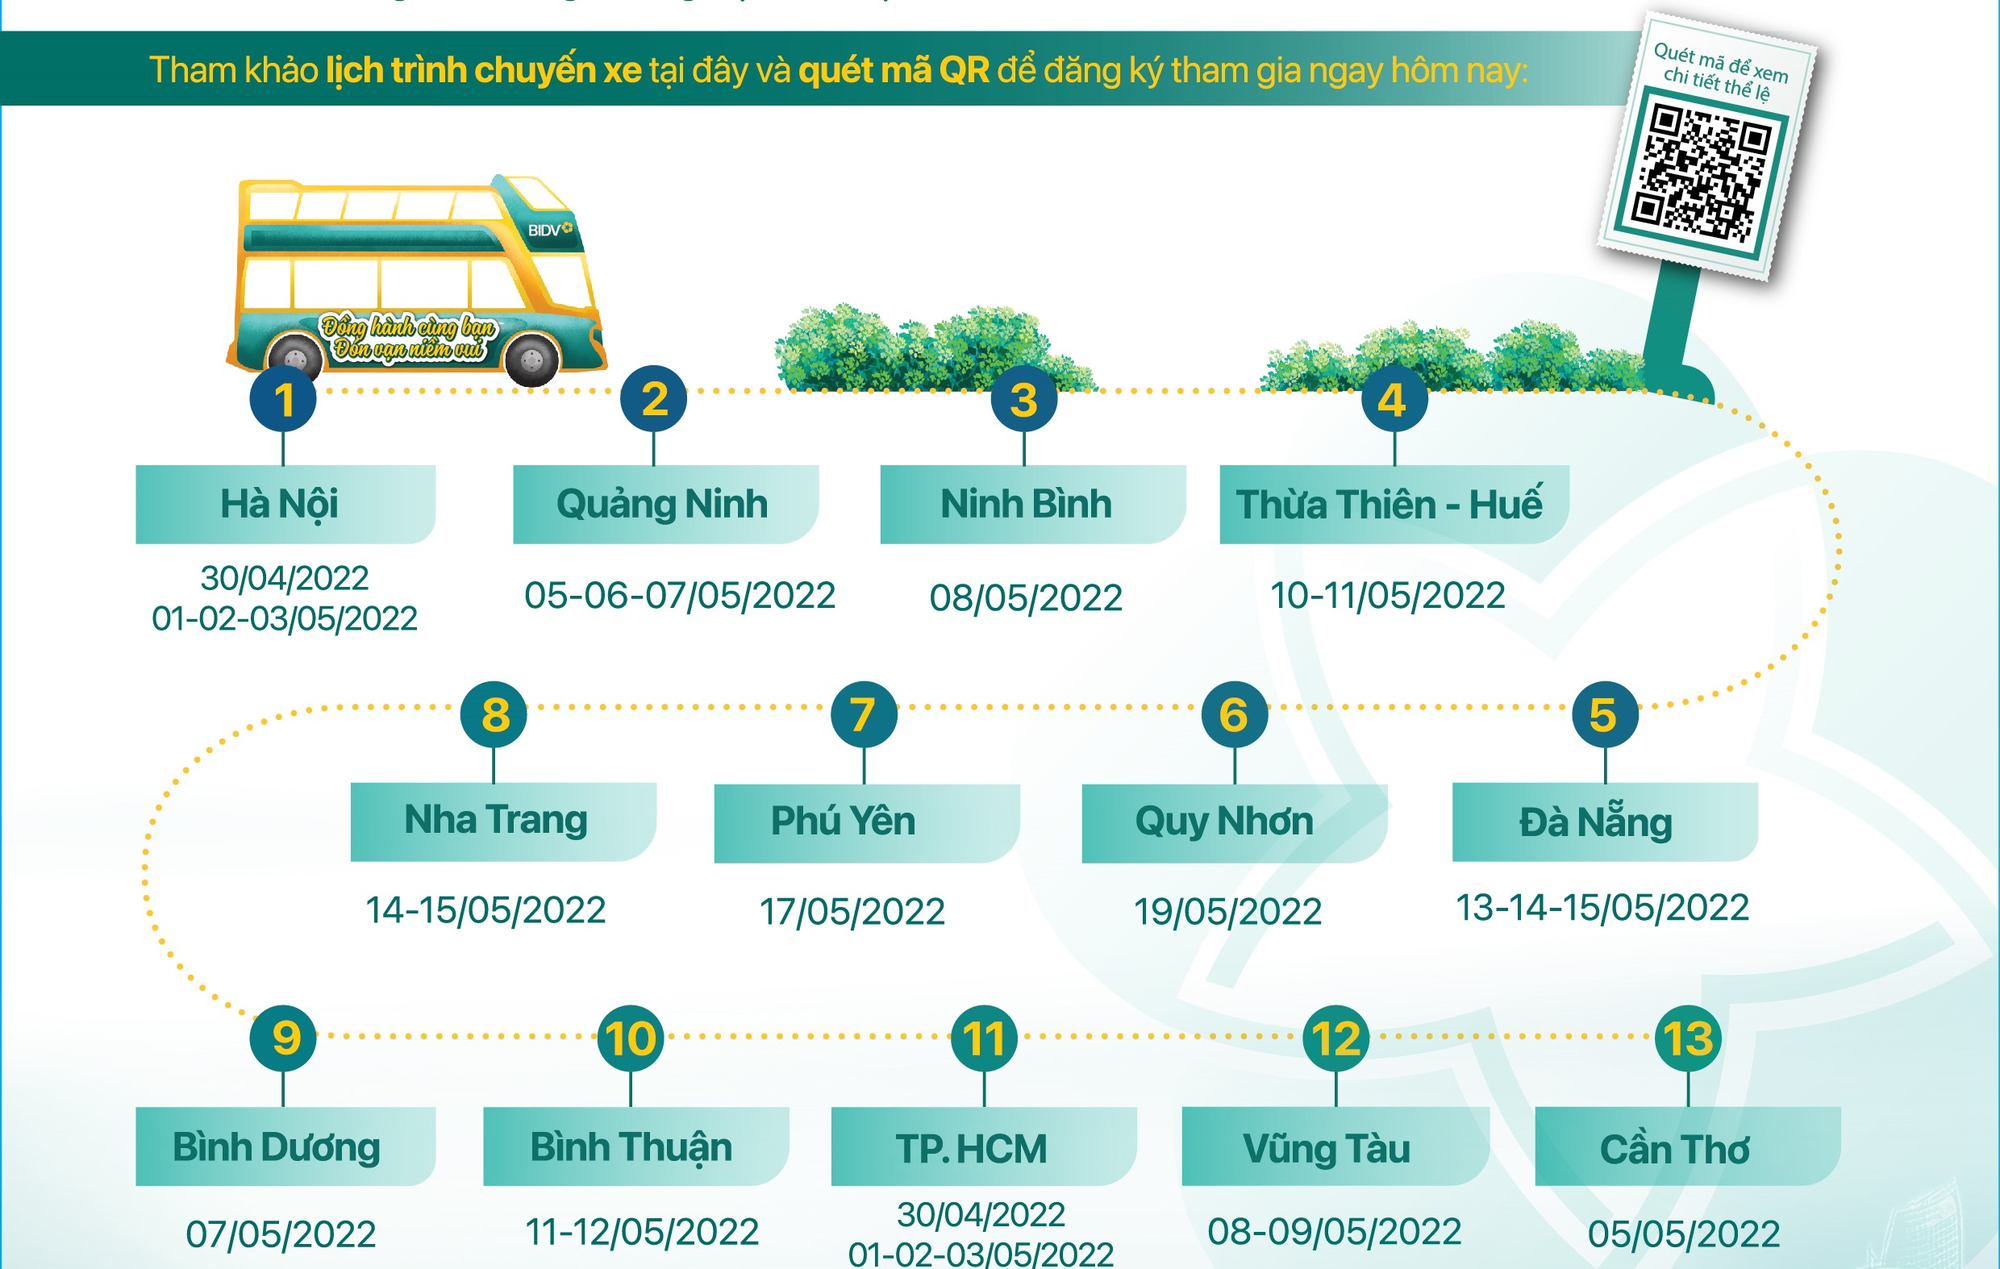 Trải nghiệm miễn phí xe bus 2 tầng xuyên Việt cùng BIDV - Ảnh 8.